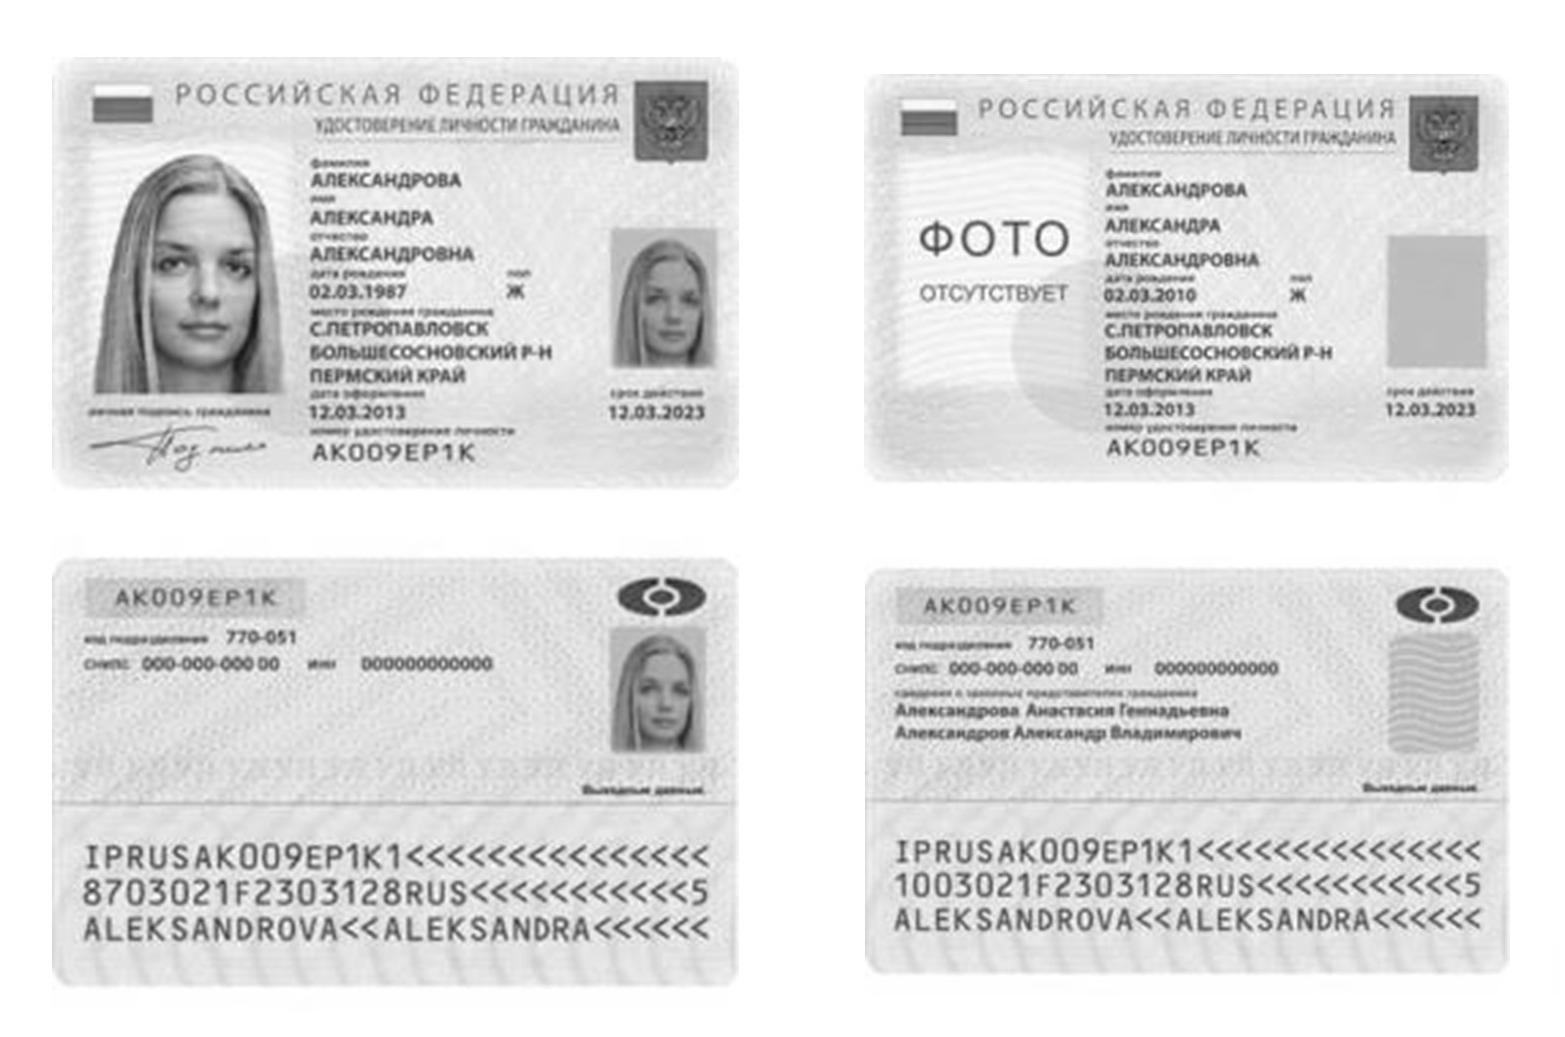 Паспорт гражданина РФ нового образца